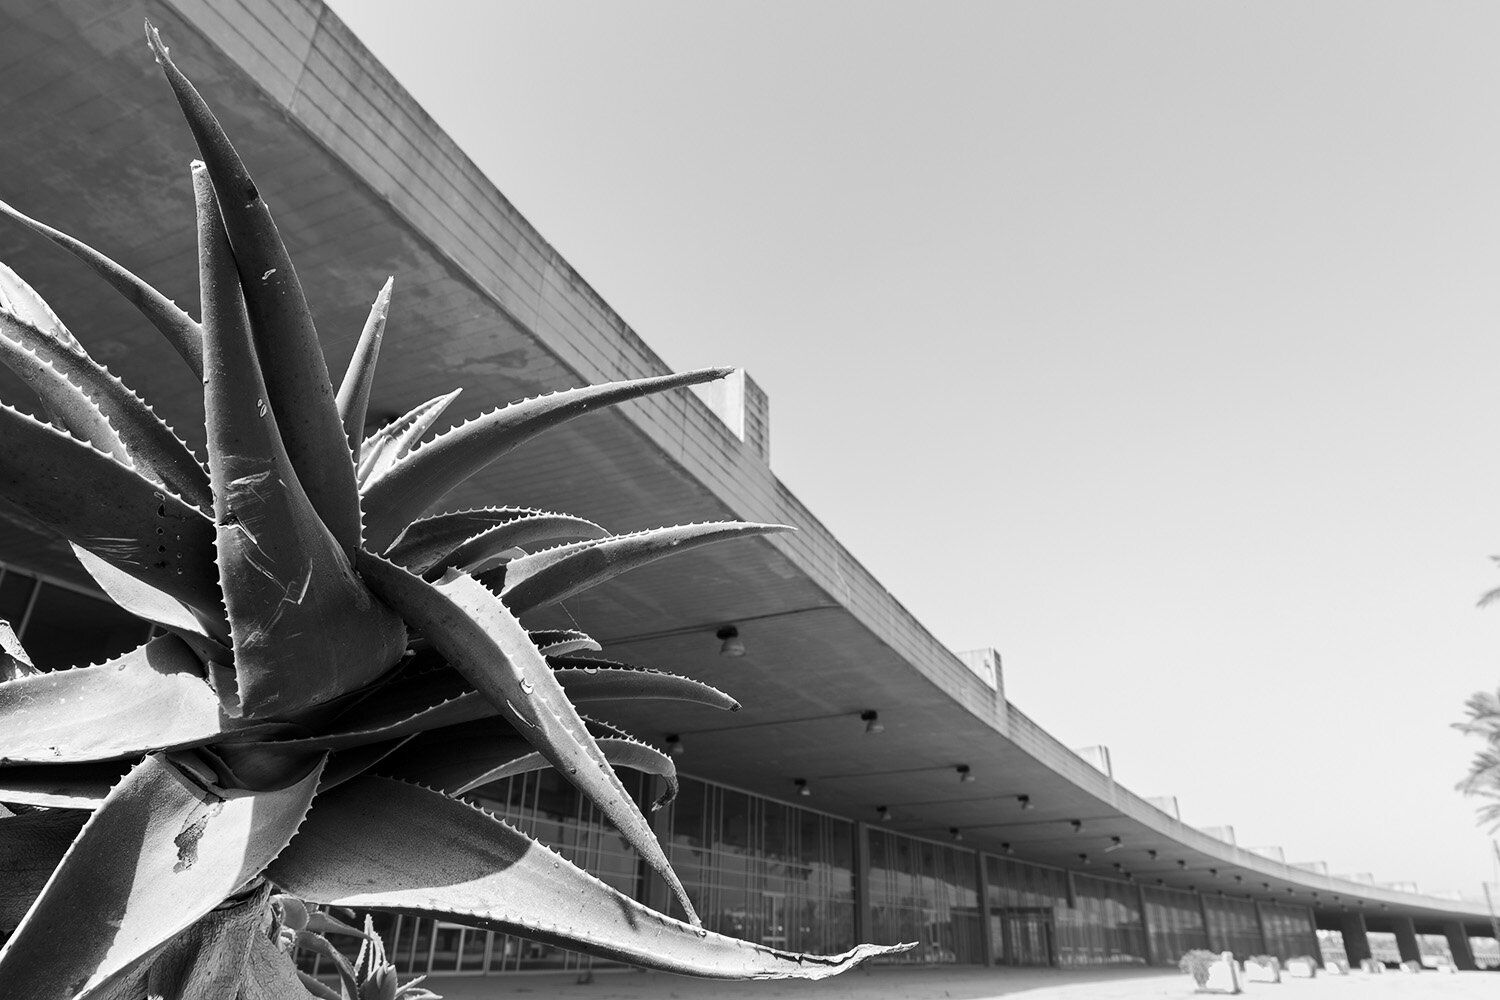  Tripoli Permanent International Fair - Oscar Niemeyer 